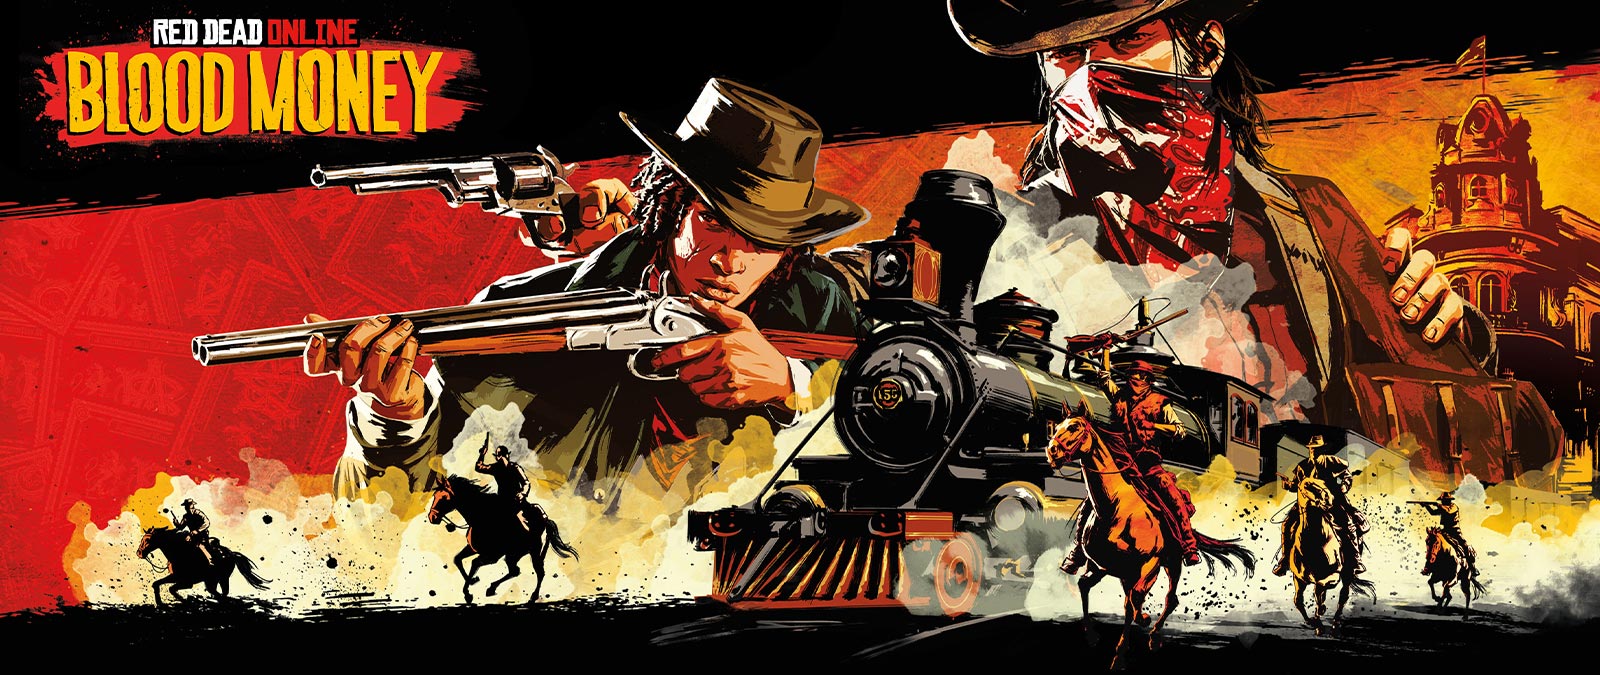 Red Dead Online: Blood Money, uzbrojeni bandyci na koniach atakują pociąg.